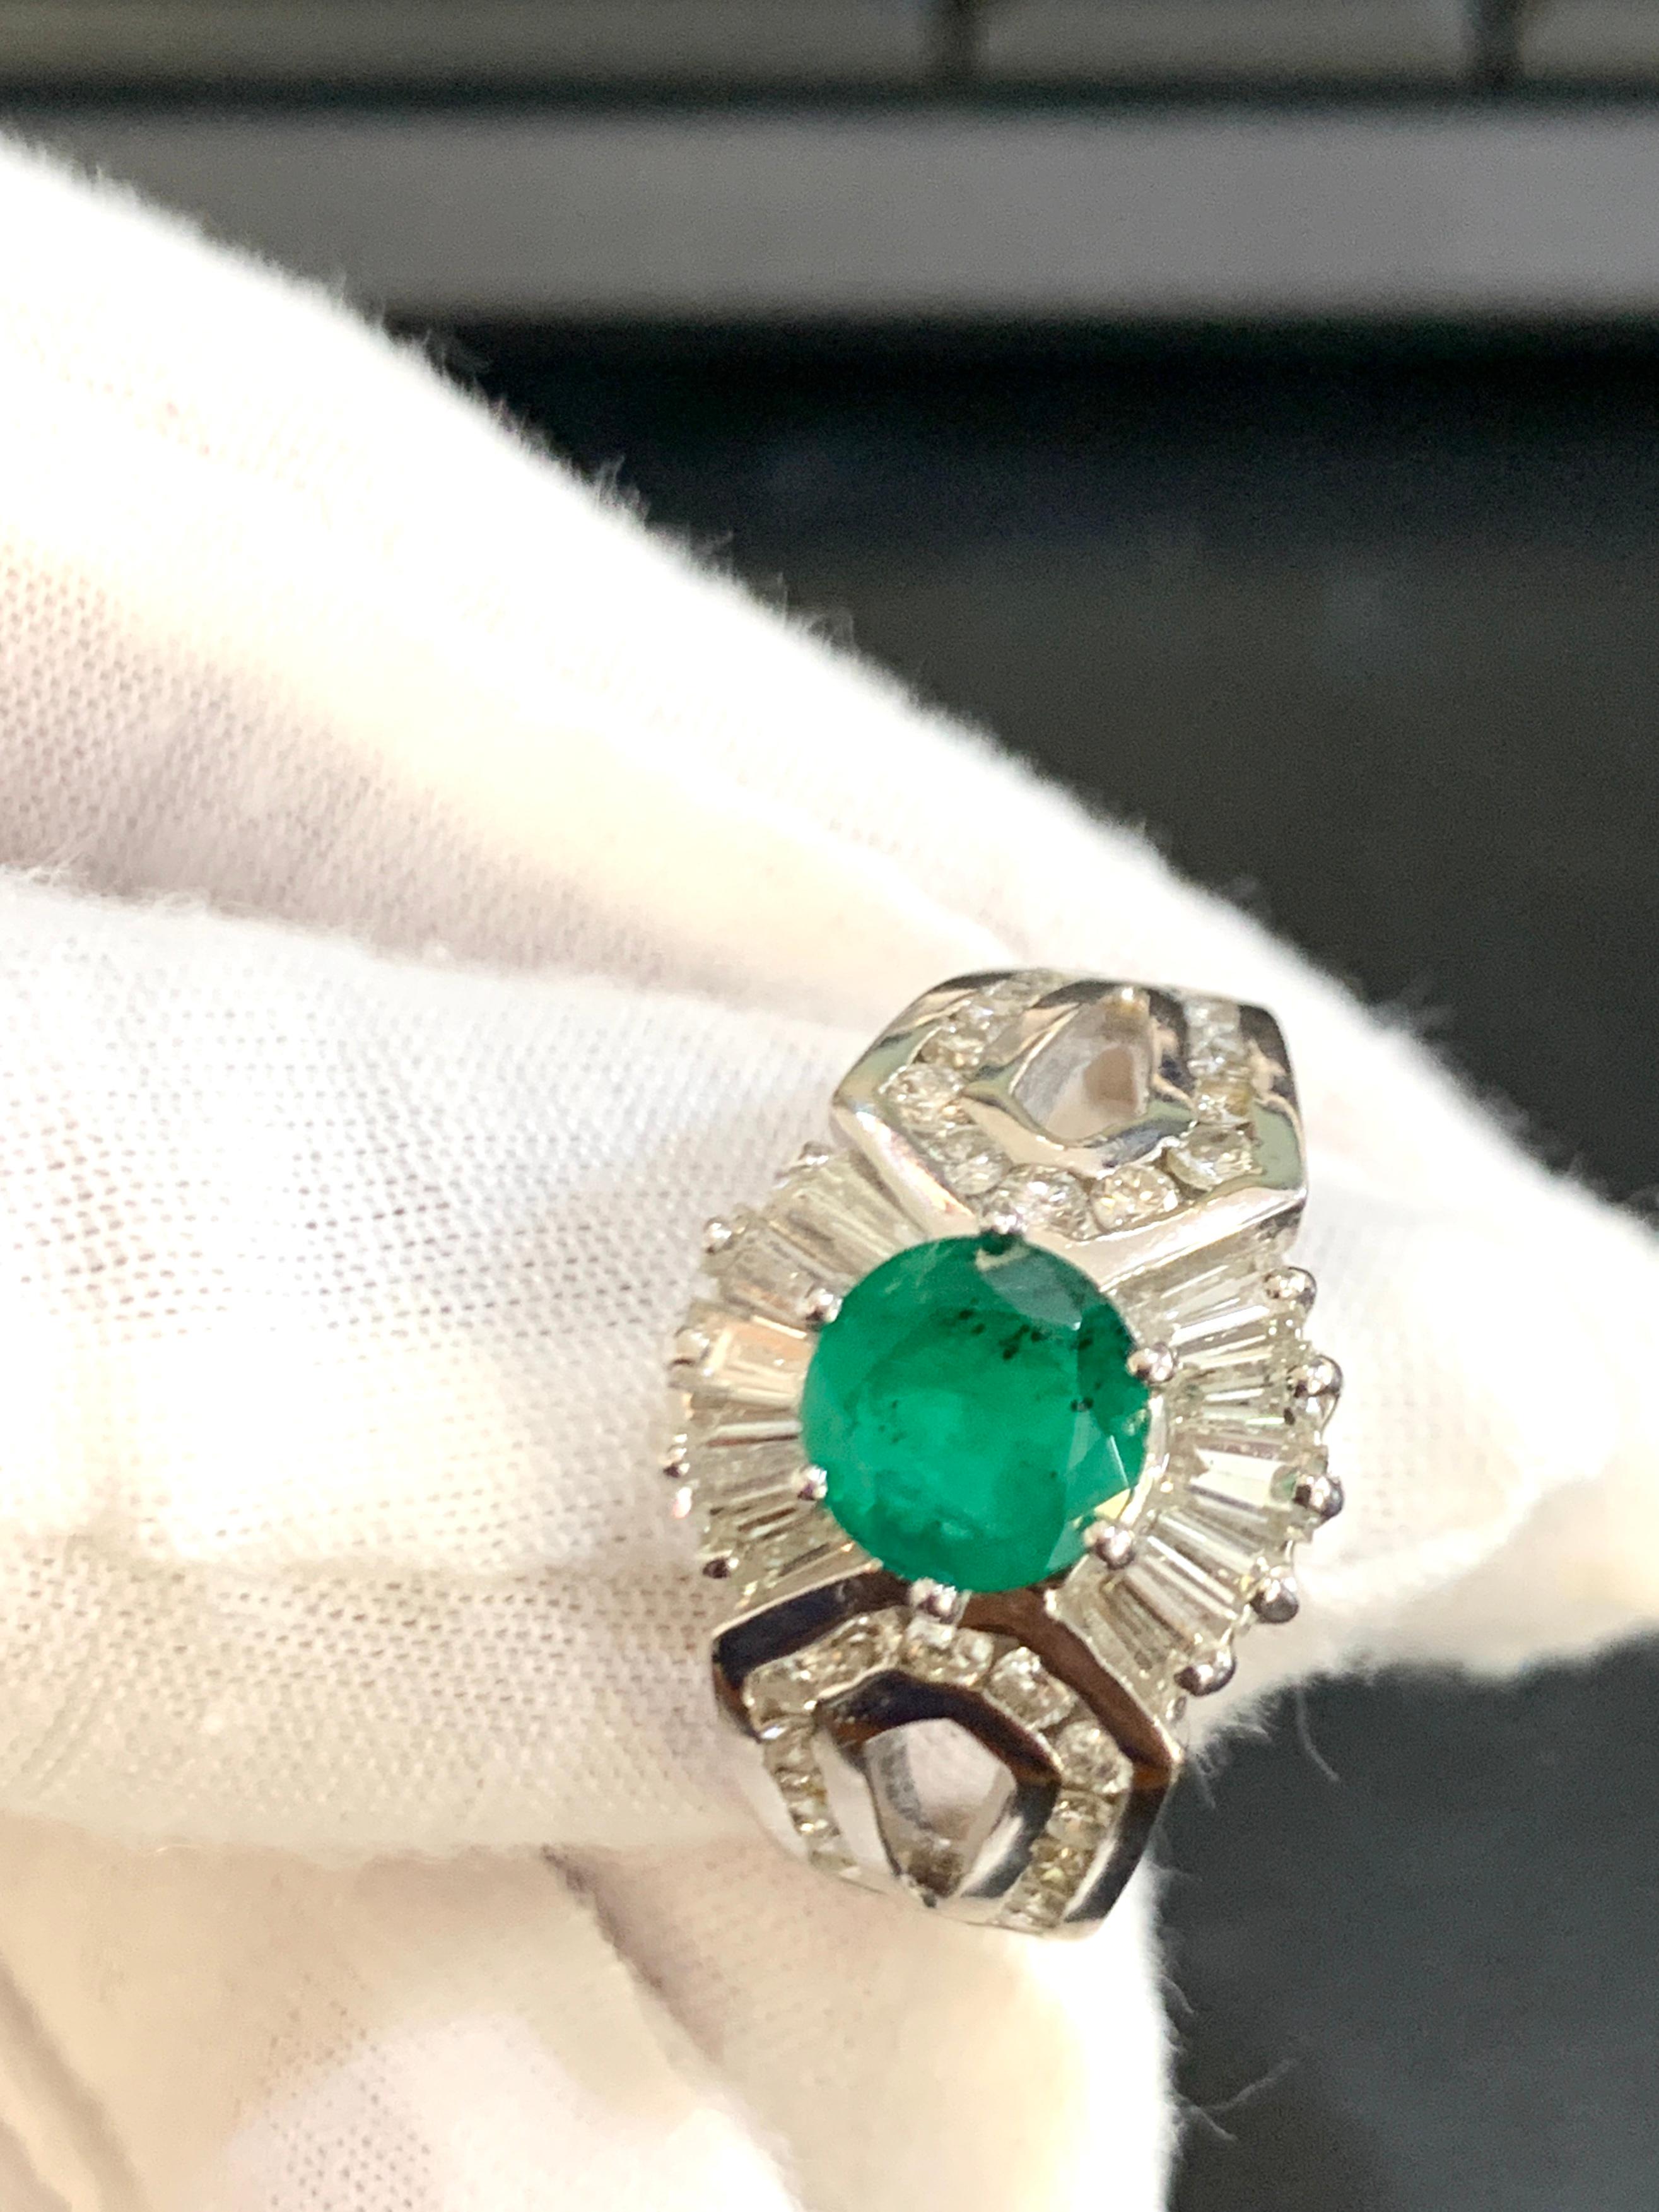 1.2 carat emerald